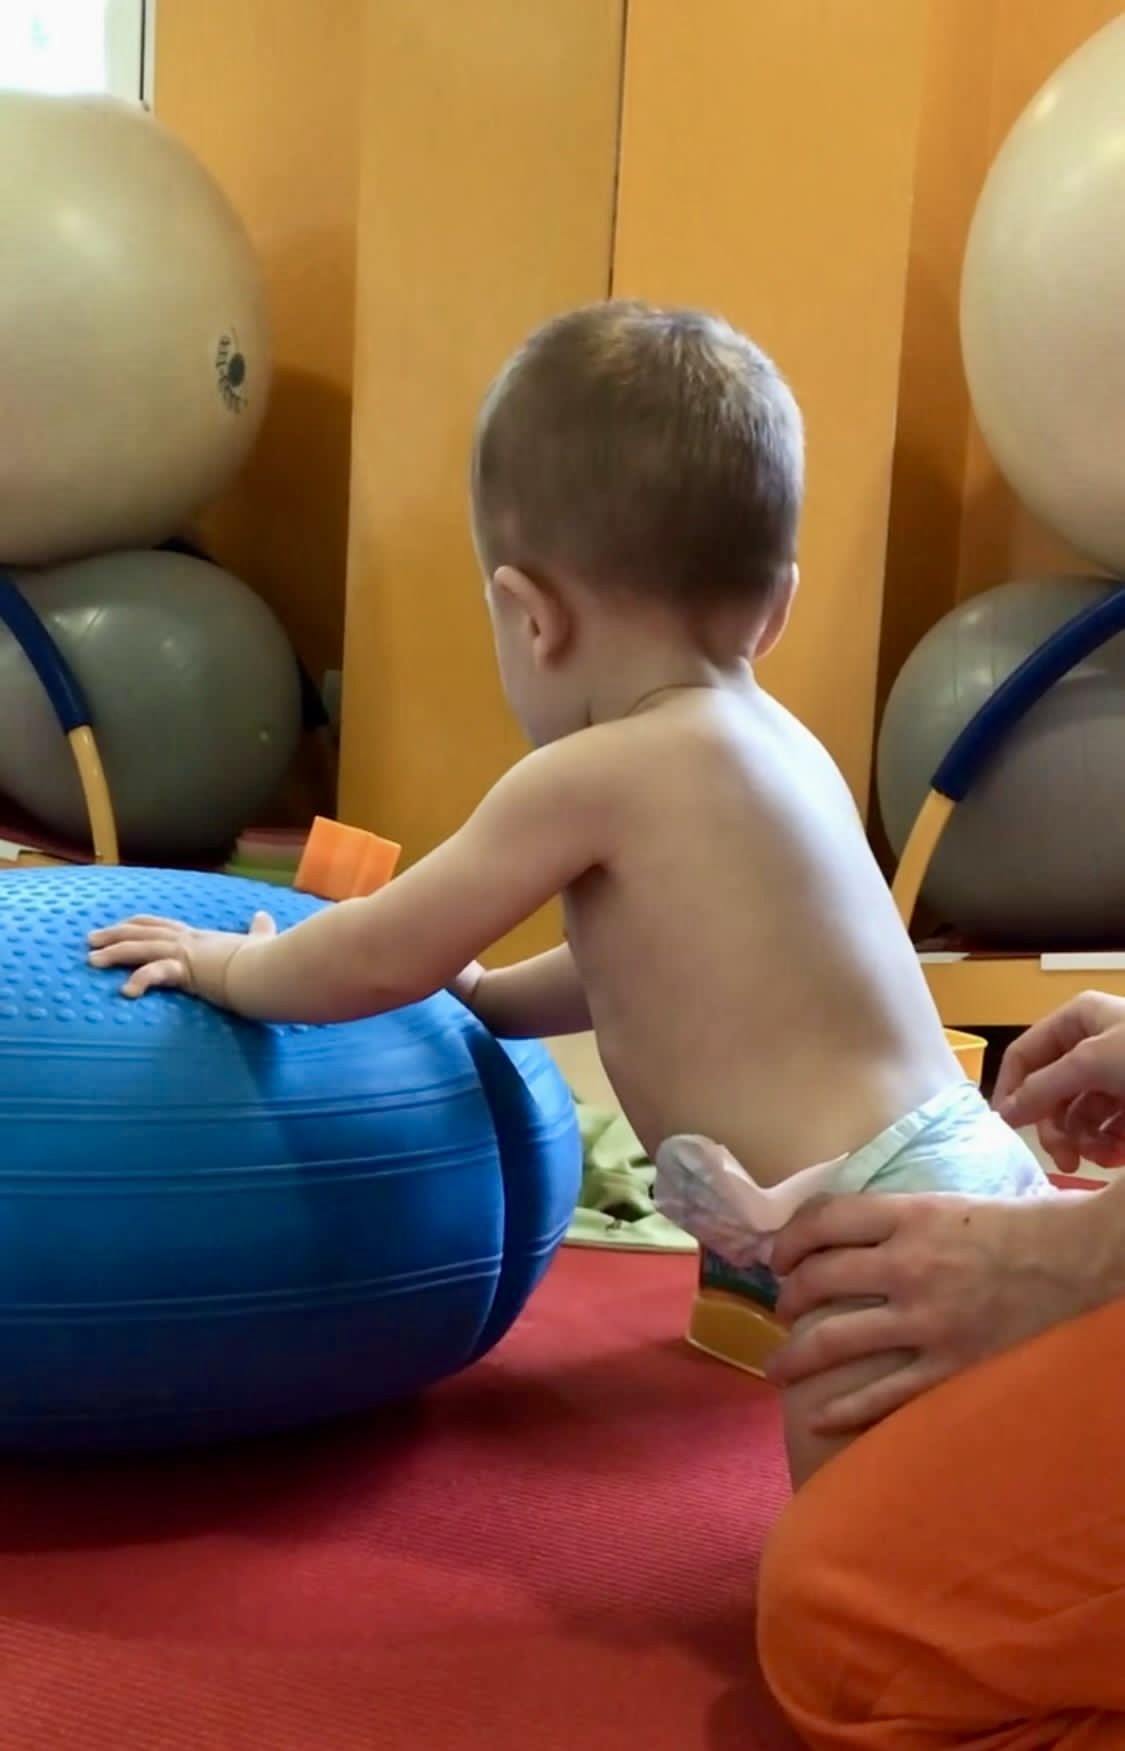 Un bebé con pañal apoya las manos en una pelota de ejercicios azul grande en una sala con suelo rojo y paredes naranjas. Una persona adulta, visible solo por las manos y la parte inferior de su cuerpo vestida con pantalón naranja, sujeta al bebé por la espalda.